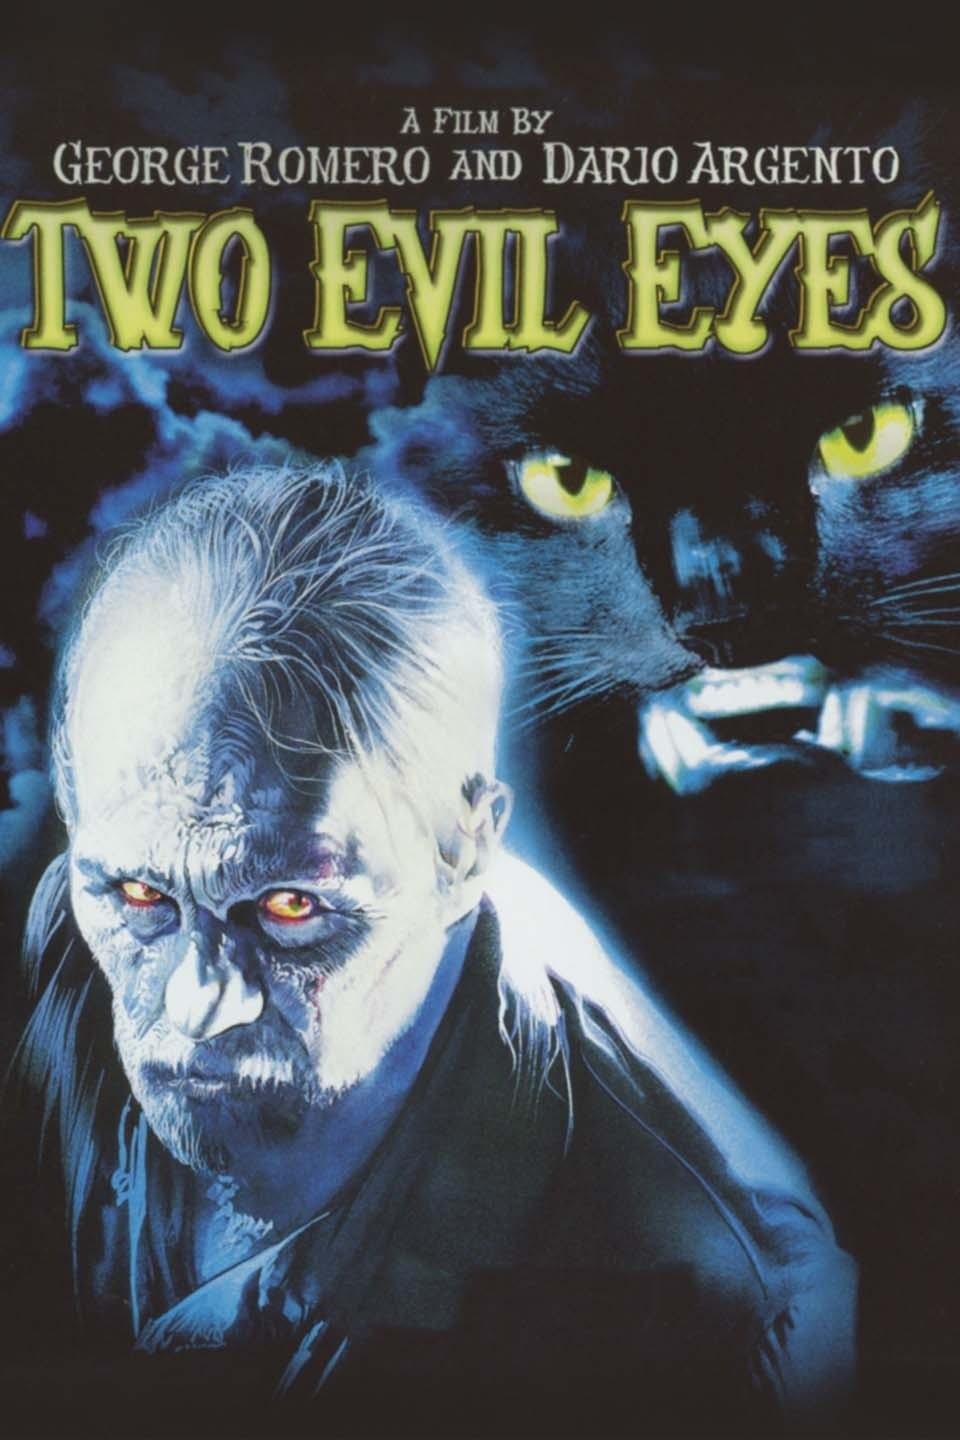 Evil Morgue Entertainment Label, Releases